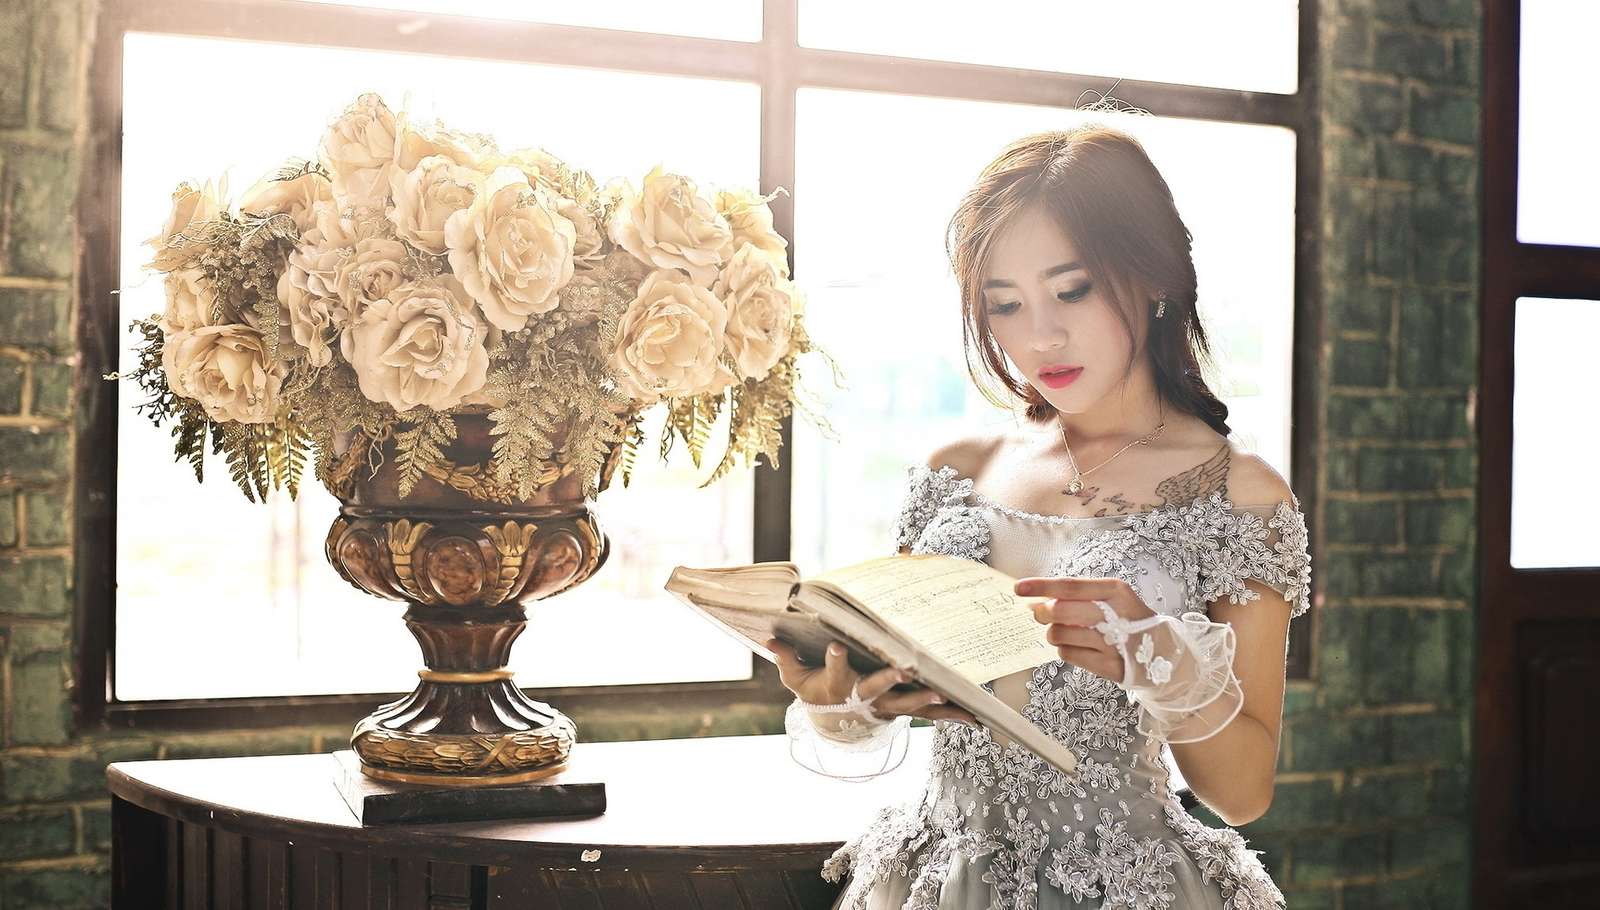 Frau mit einem Buch neben Rosen in einer Vase am Fenster Puzzlespiel online